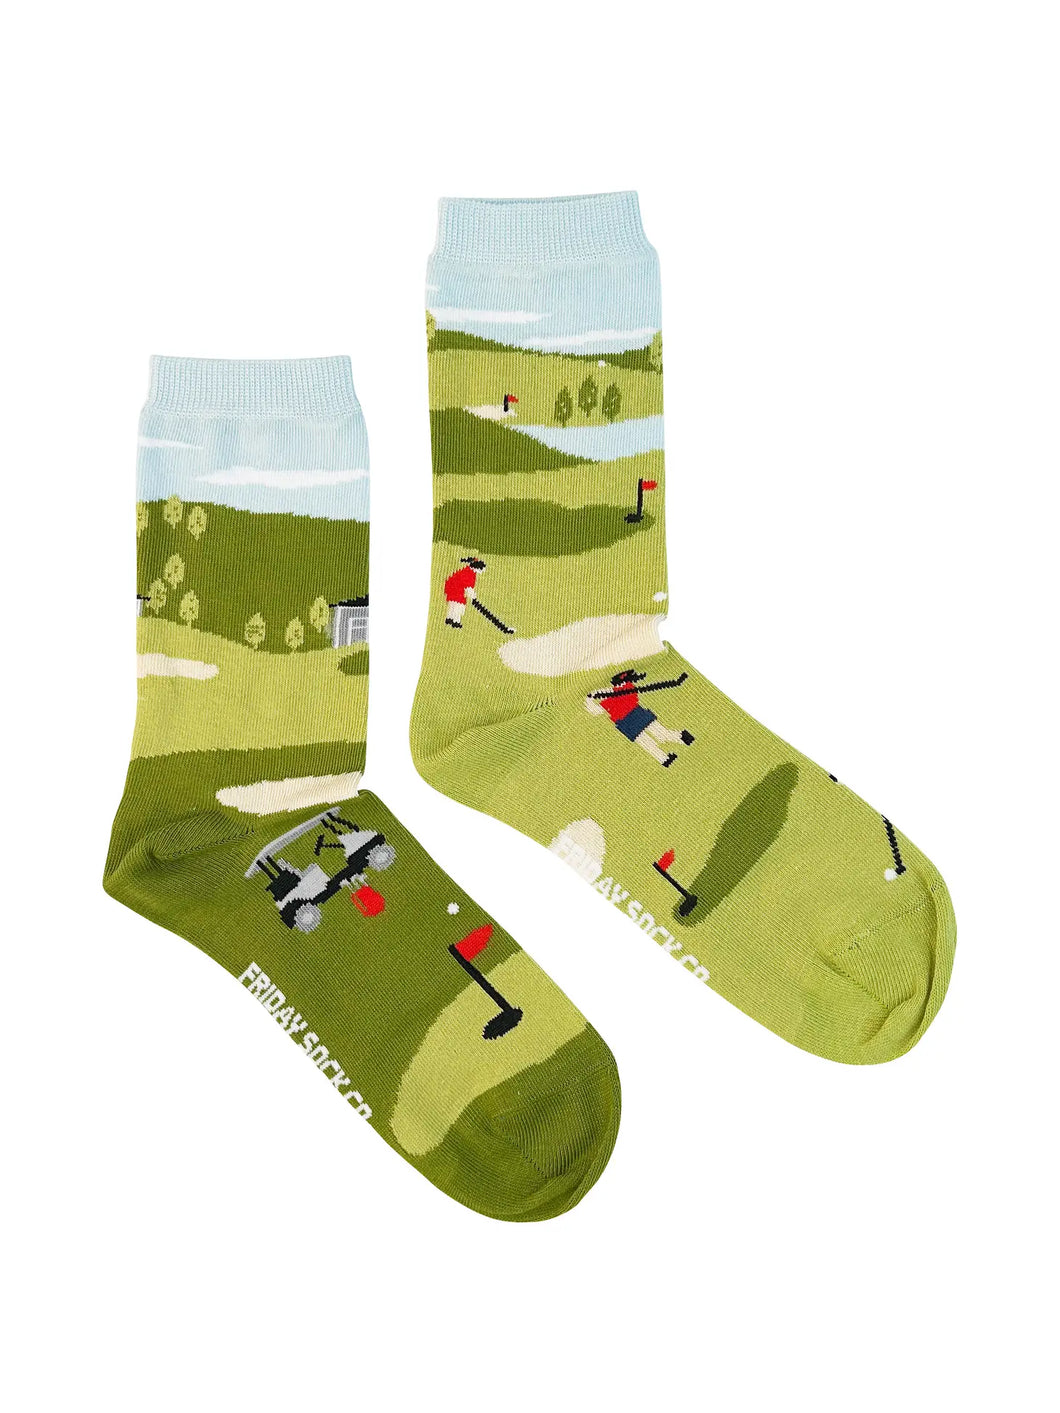 women's socks - golf scene